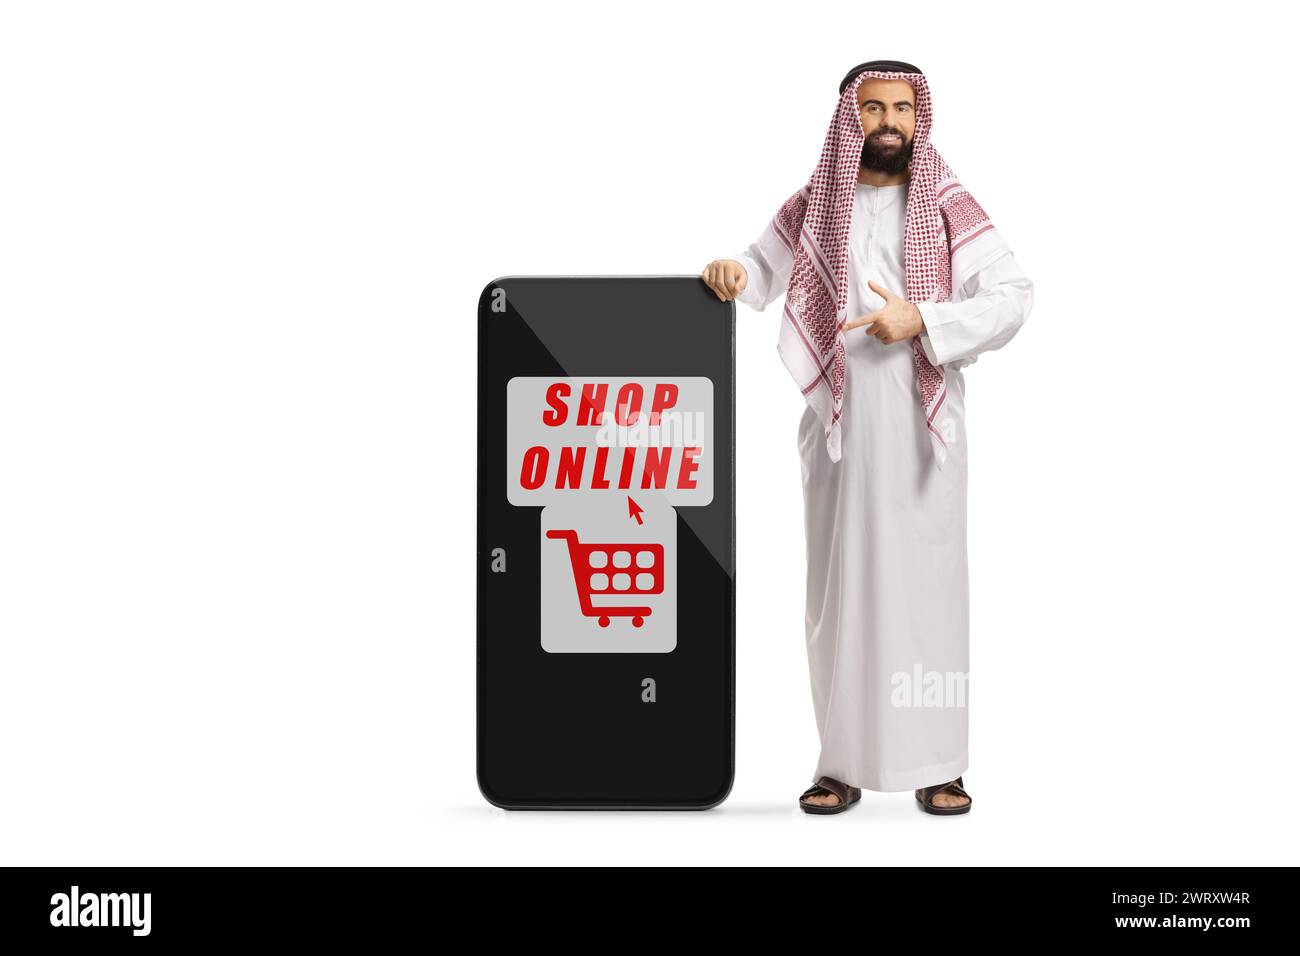 Uomo arabo saudita in abiti etnici in piedi accanto a un telefono cellulare con insegna dello shopping online isolata su sfondo bianco Foto Stock